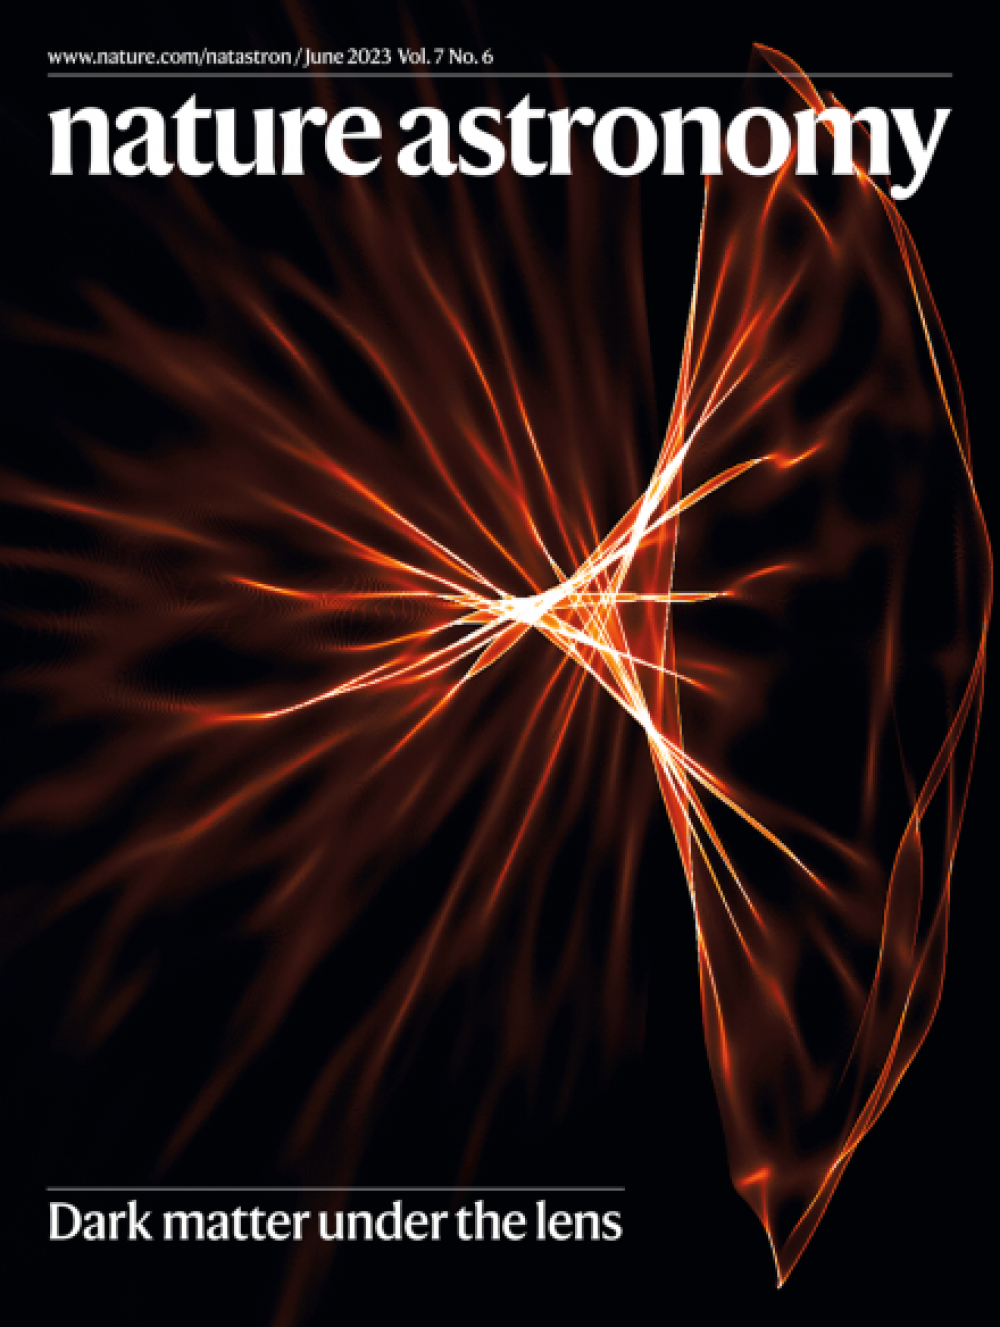 《自然天文学》Alfred Amruth 登上《自然天文学》第7卷第6期封面